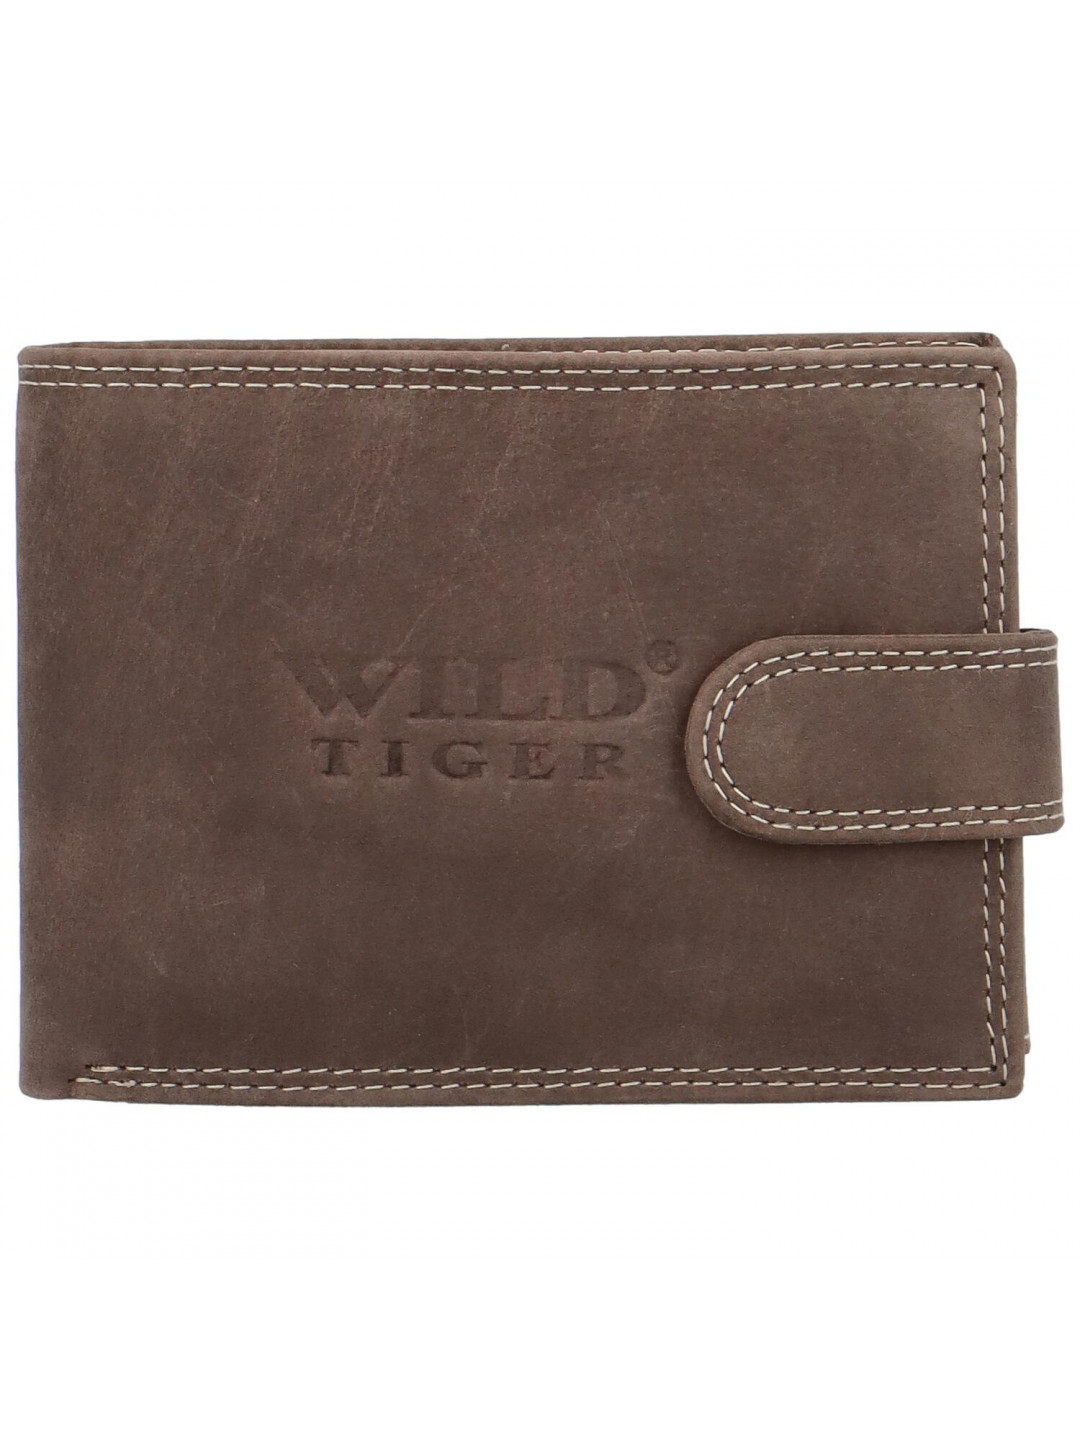 Pánská kožená peněženka tmavě hnědá – Wild Tiger Nolan